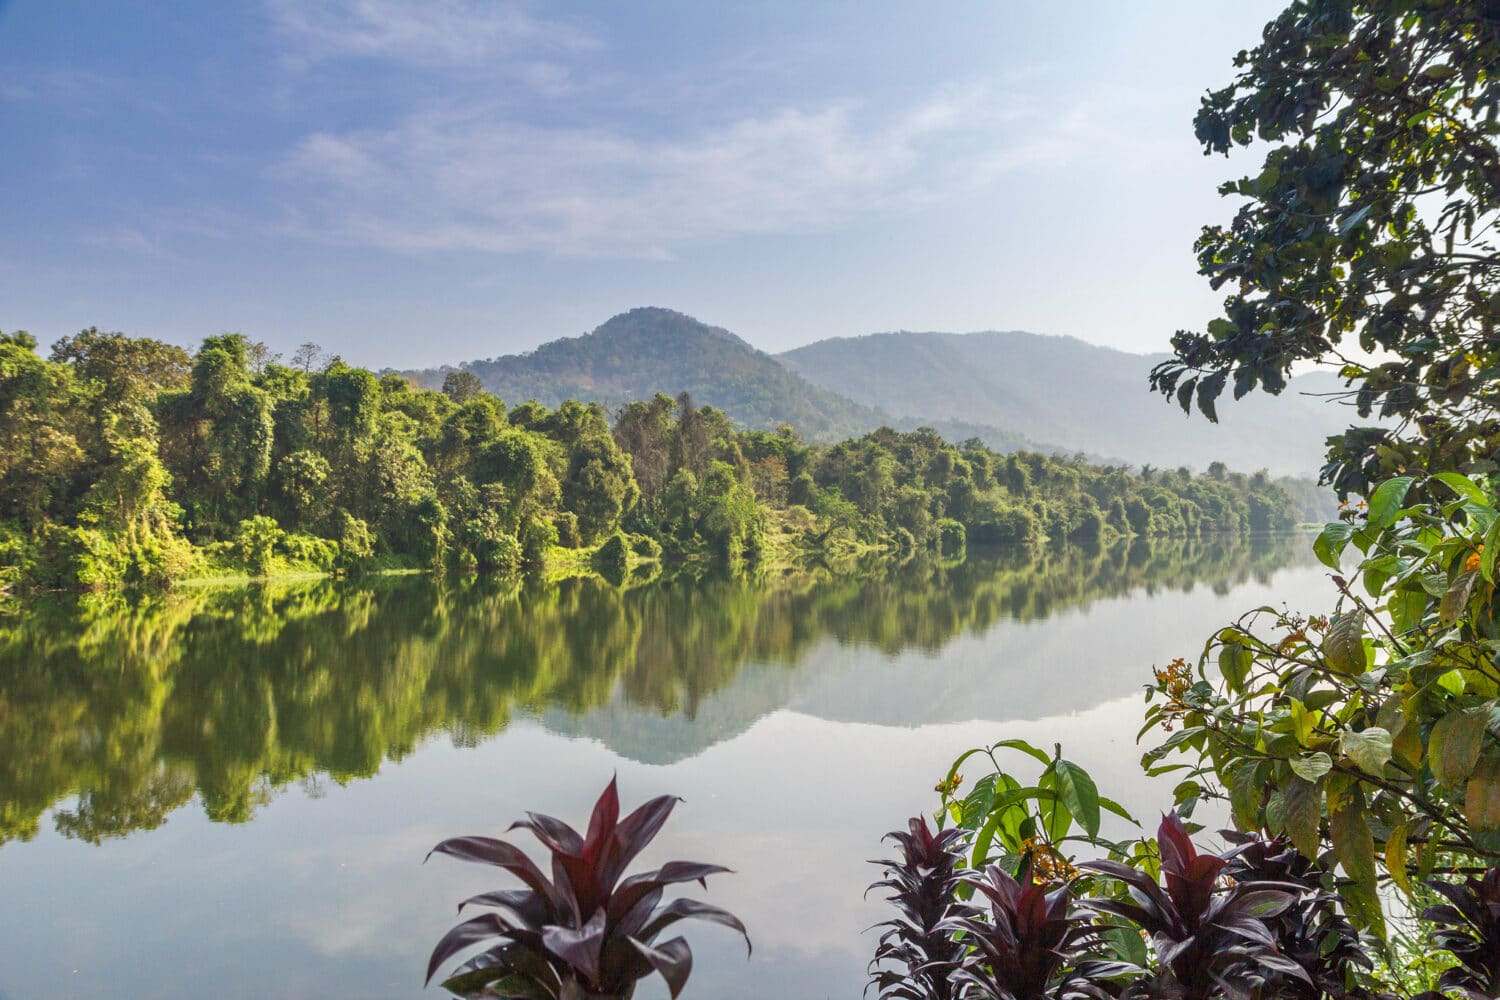 Periyar River, em Kerala, e refletindo a imagem de uma montanha, com muitas árvores e plantas nas margens